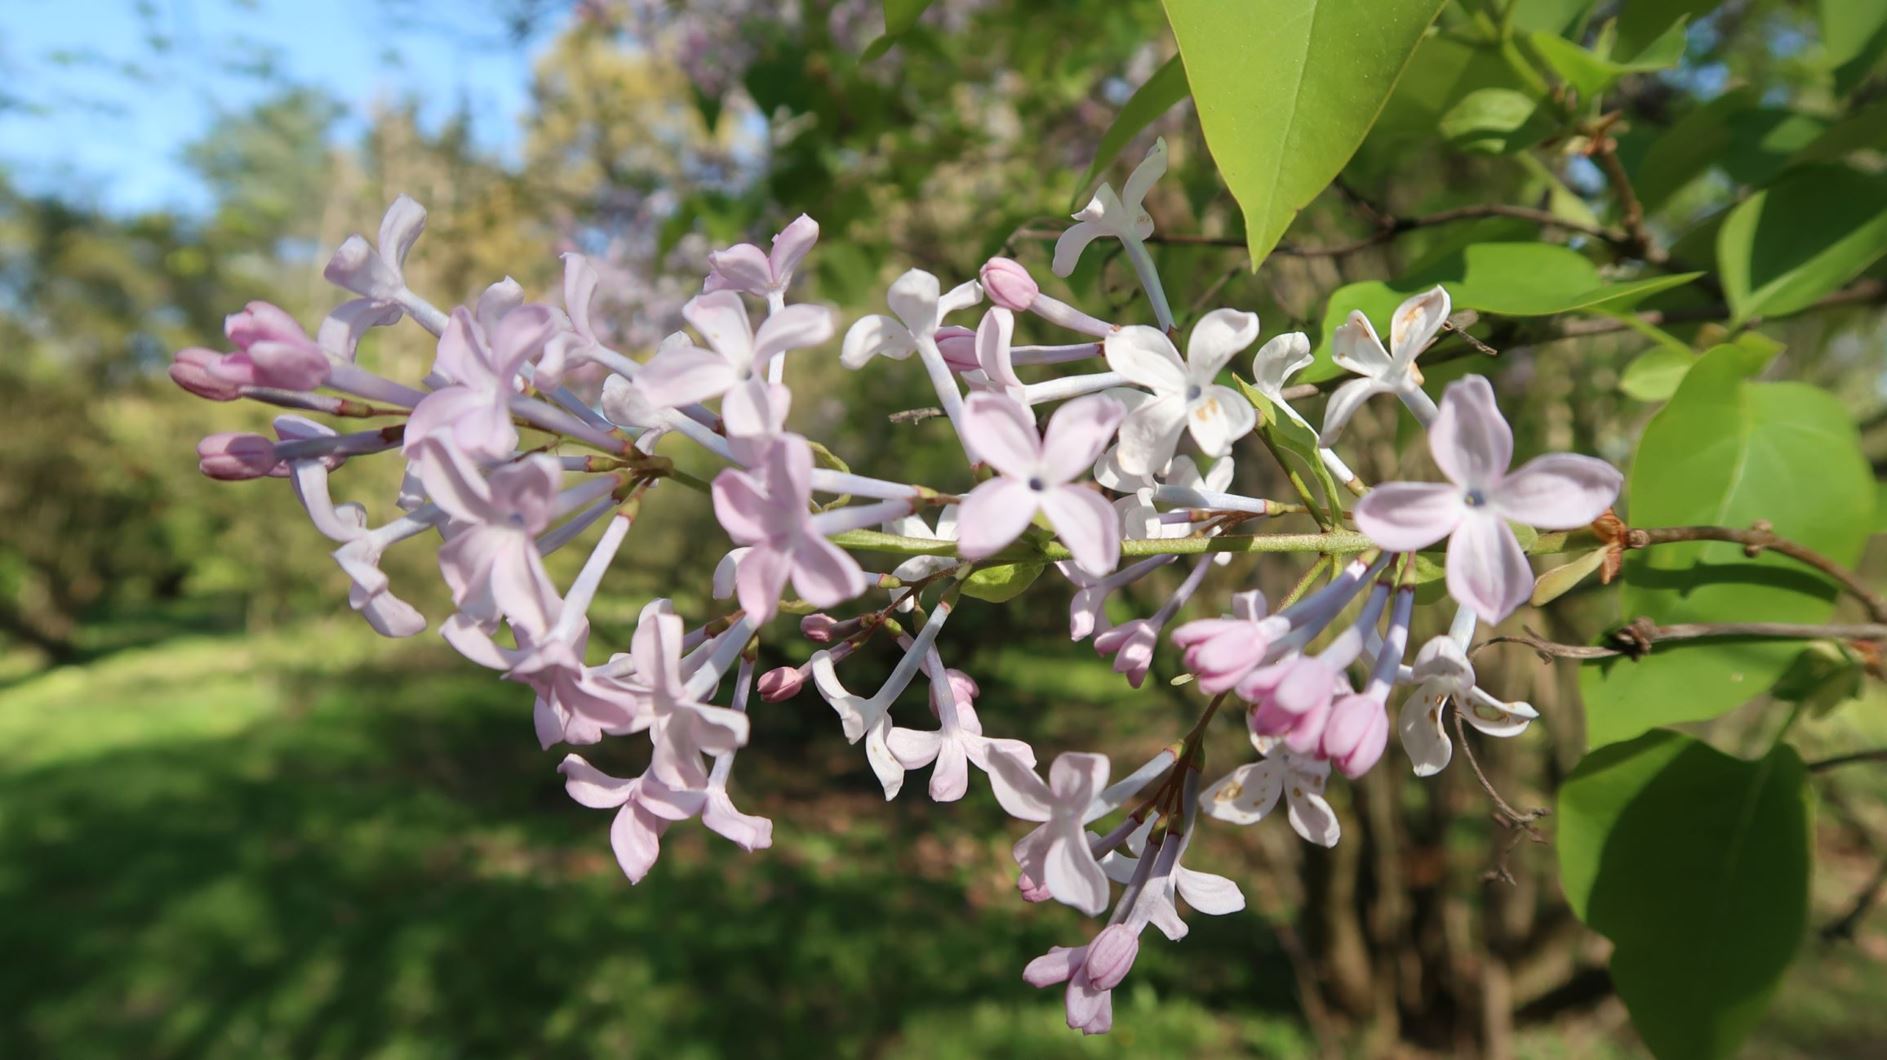 Syringa oblata - Rundblättriger Flieder, broadleaf lilac, early blooming lilac